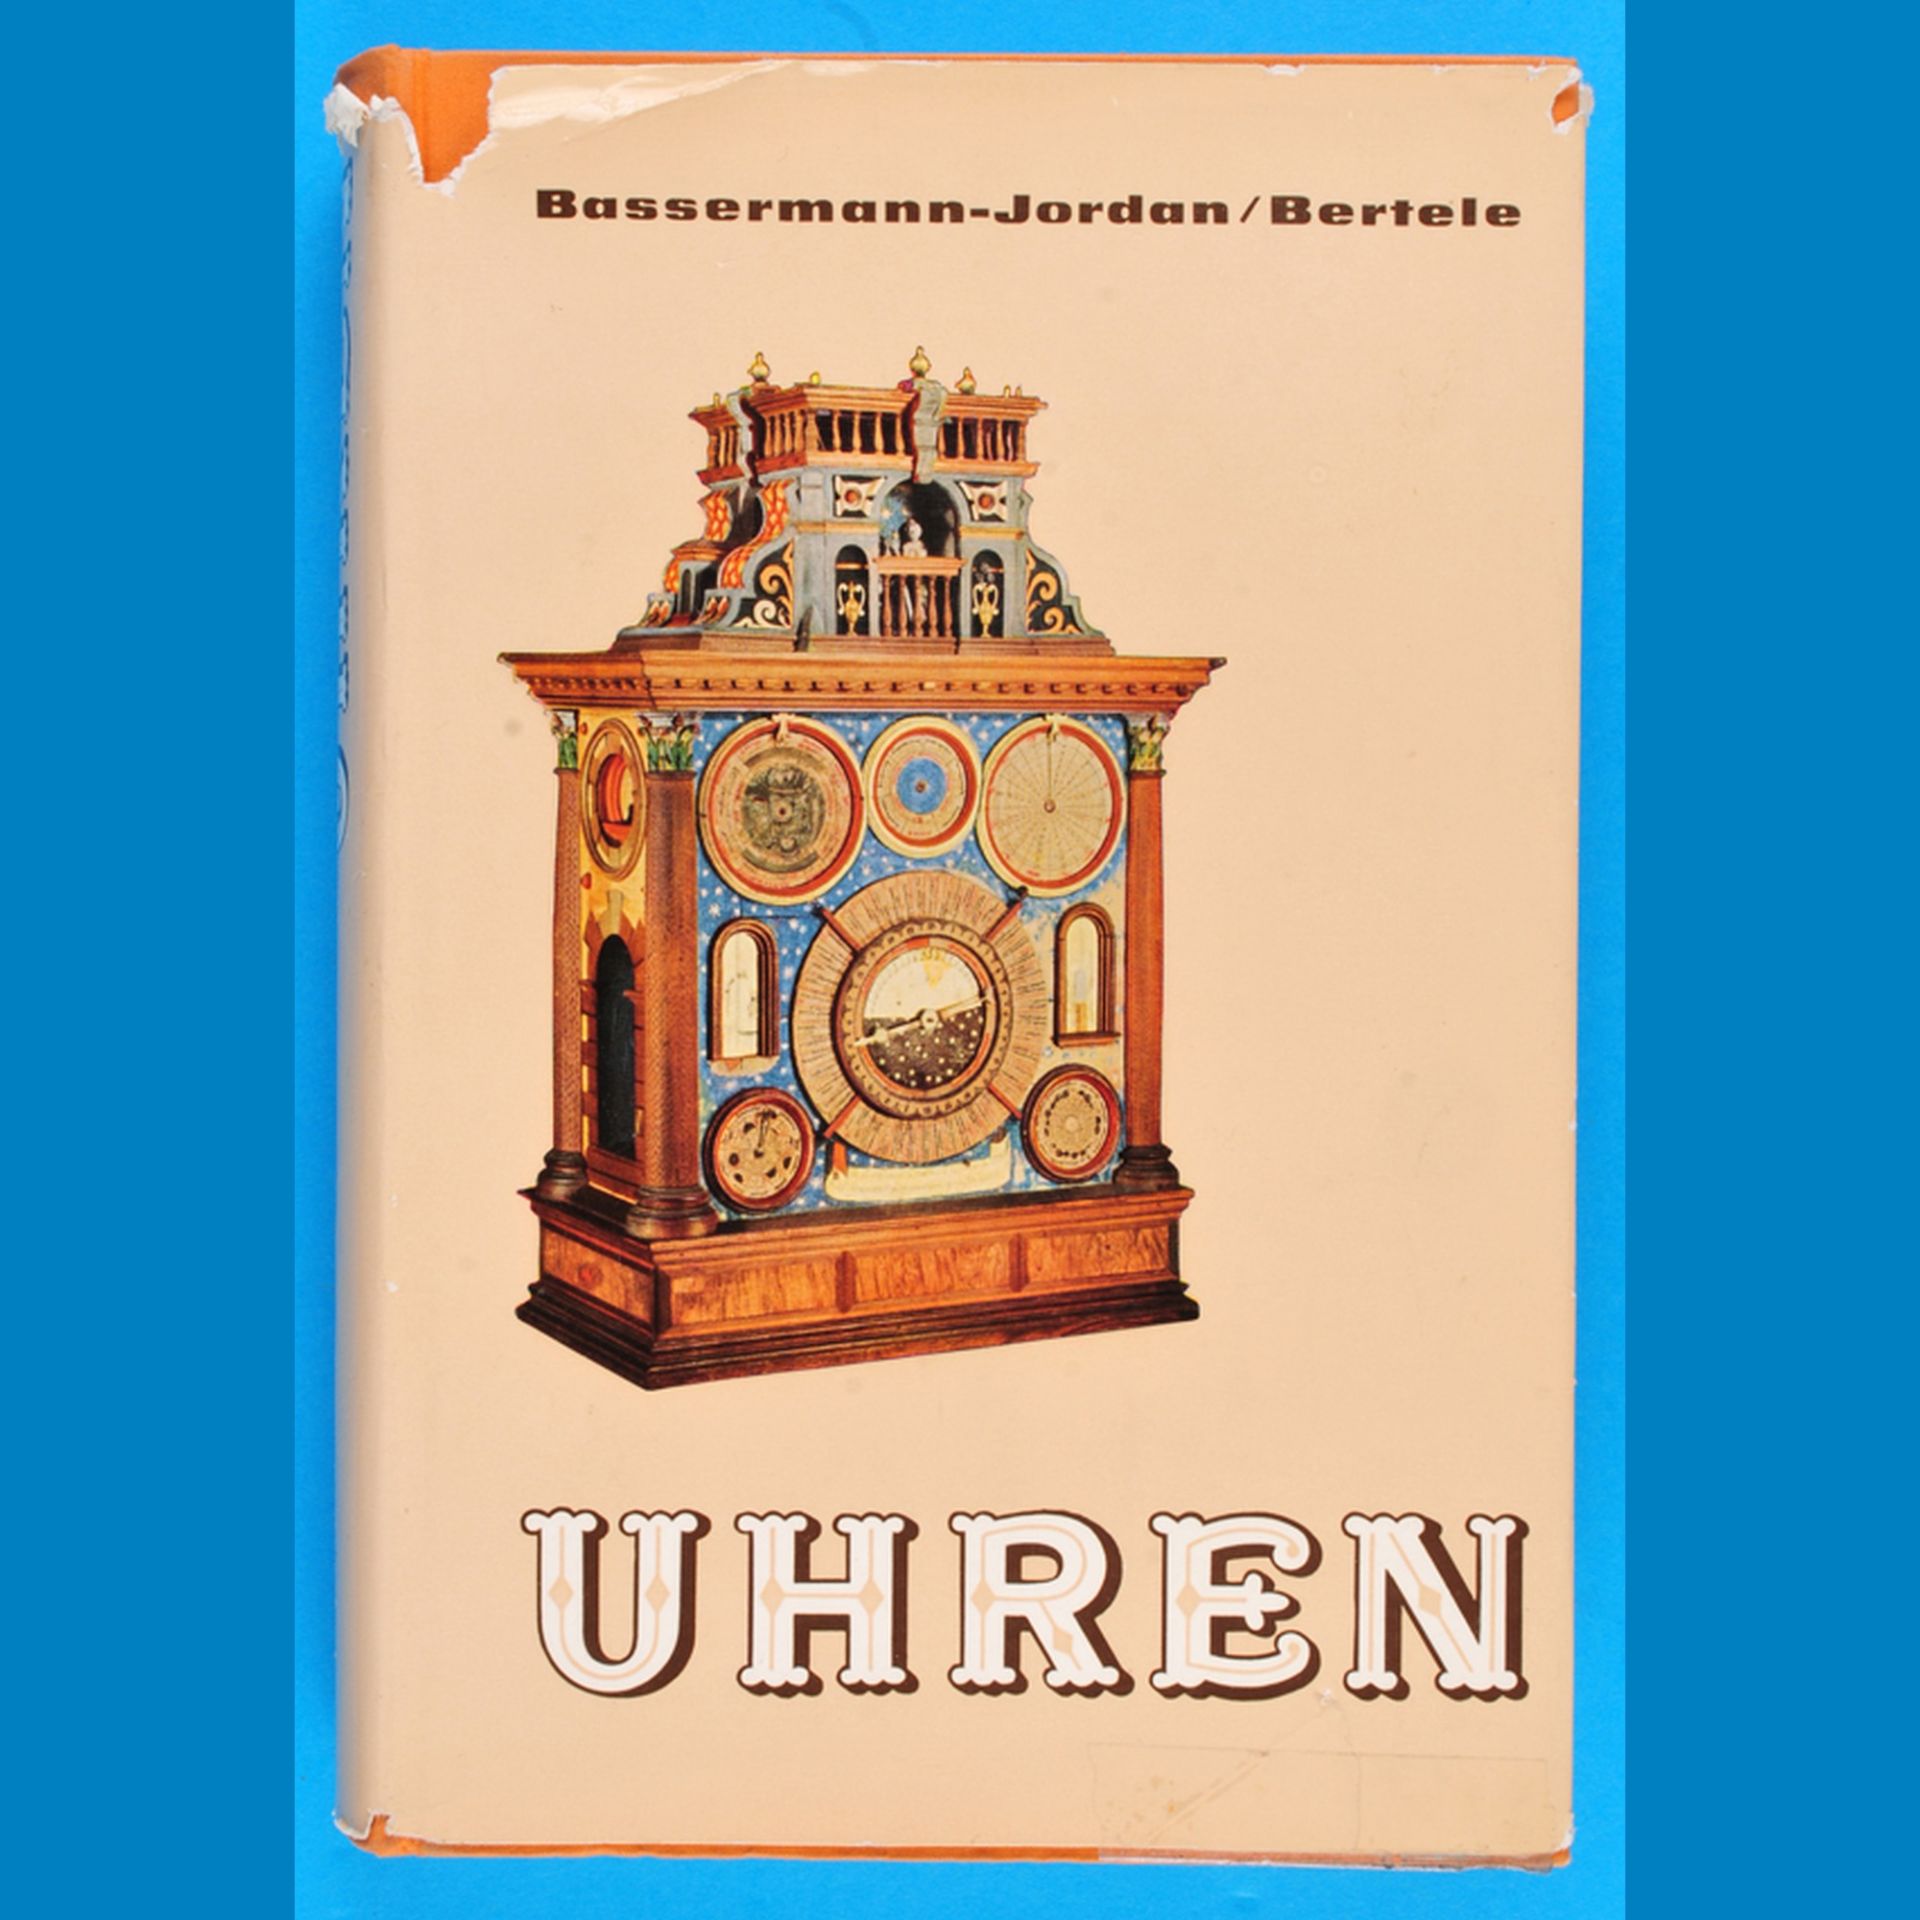 Ernst v. Bassermann-Jordan/Bertele, Uhren - Ein Handbuch für Sammler und Liebhaber, 1969, 5.